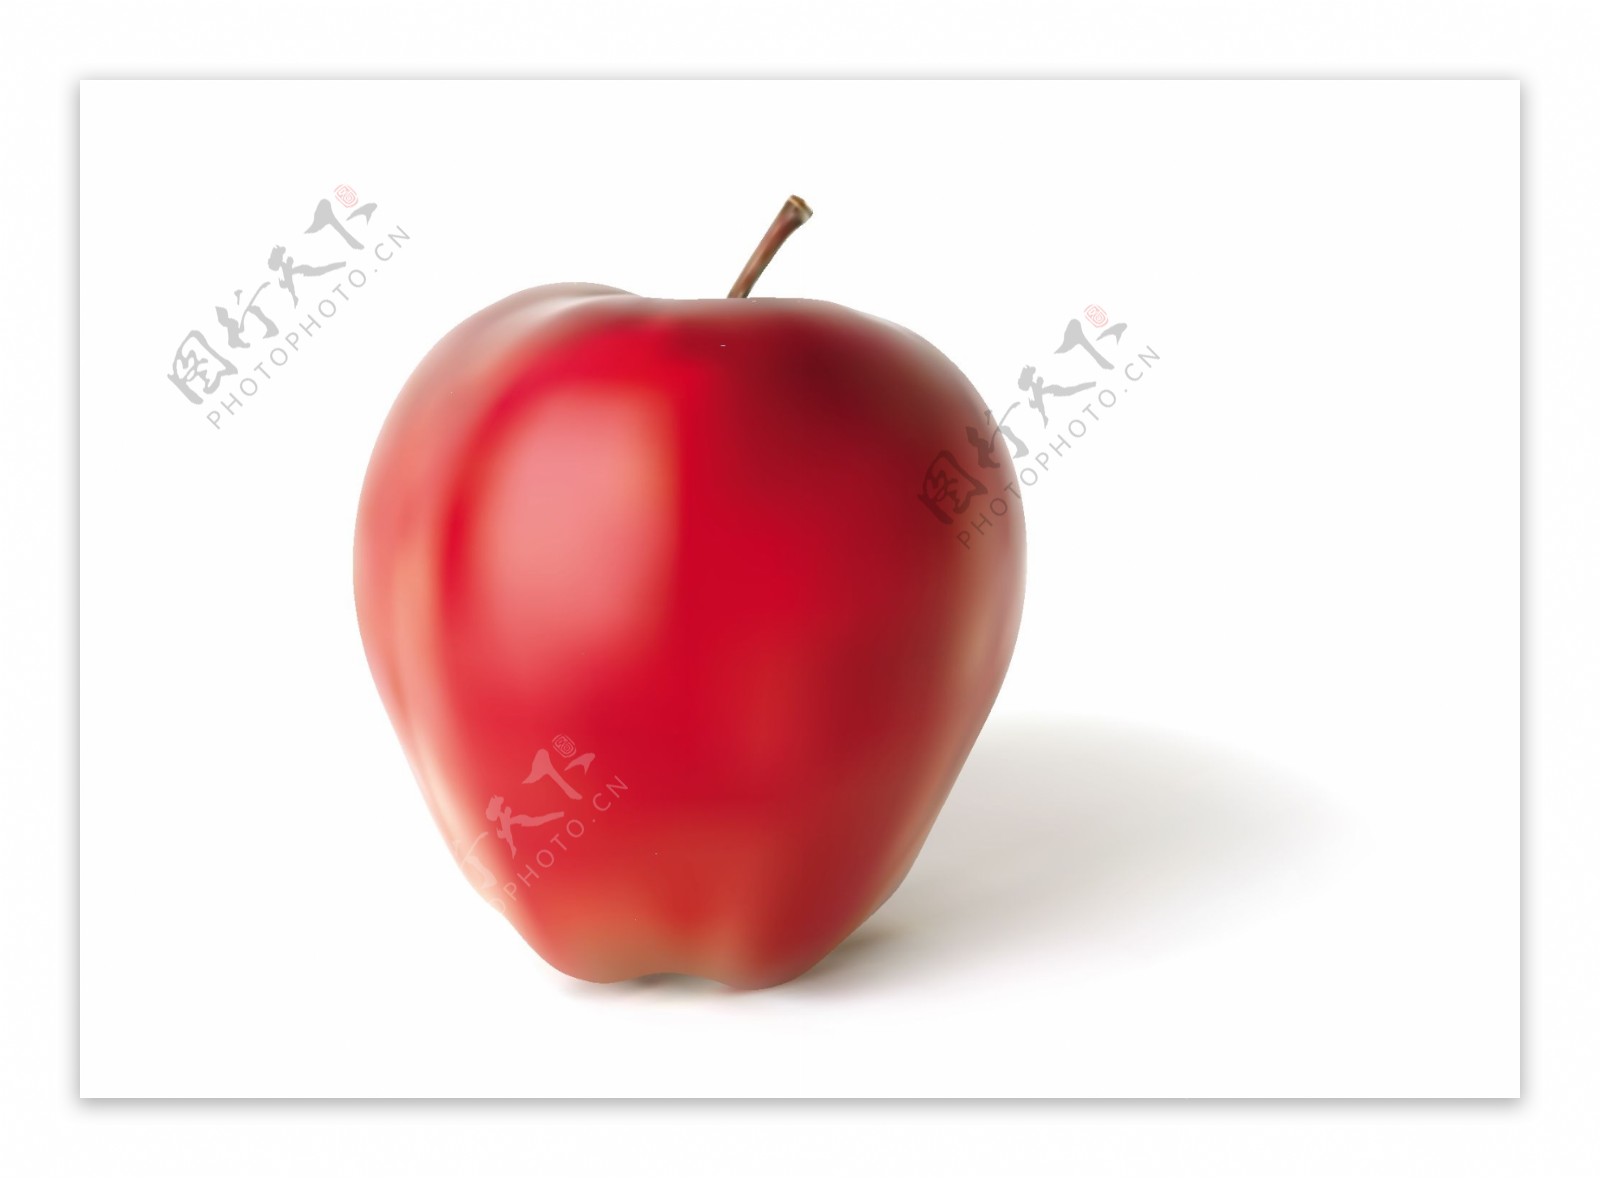 水晶红苹果图片